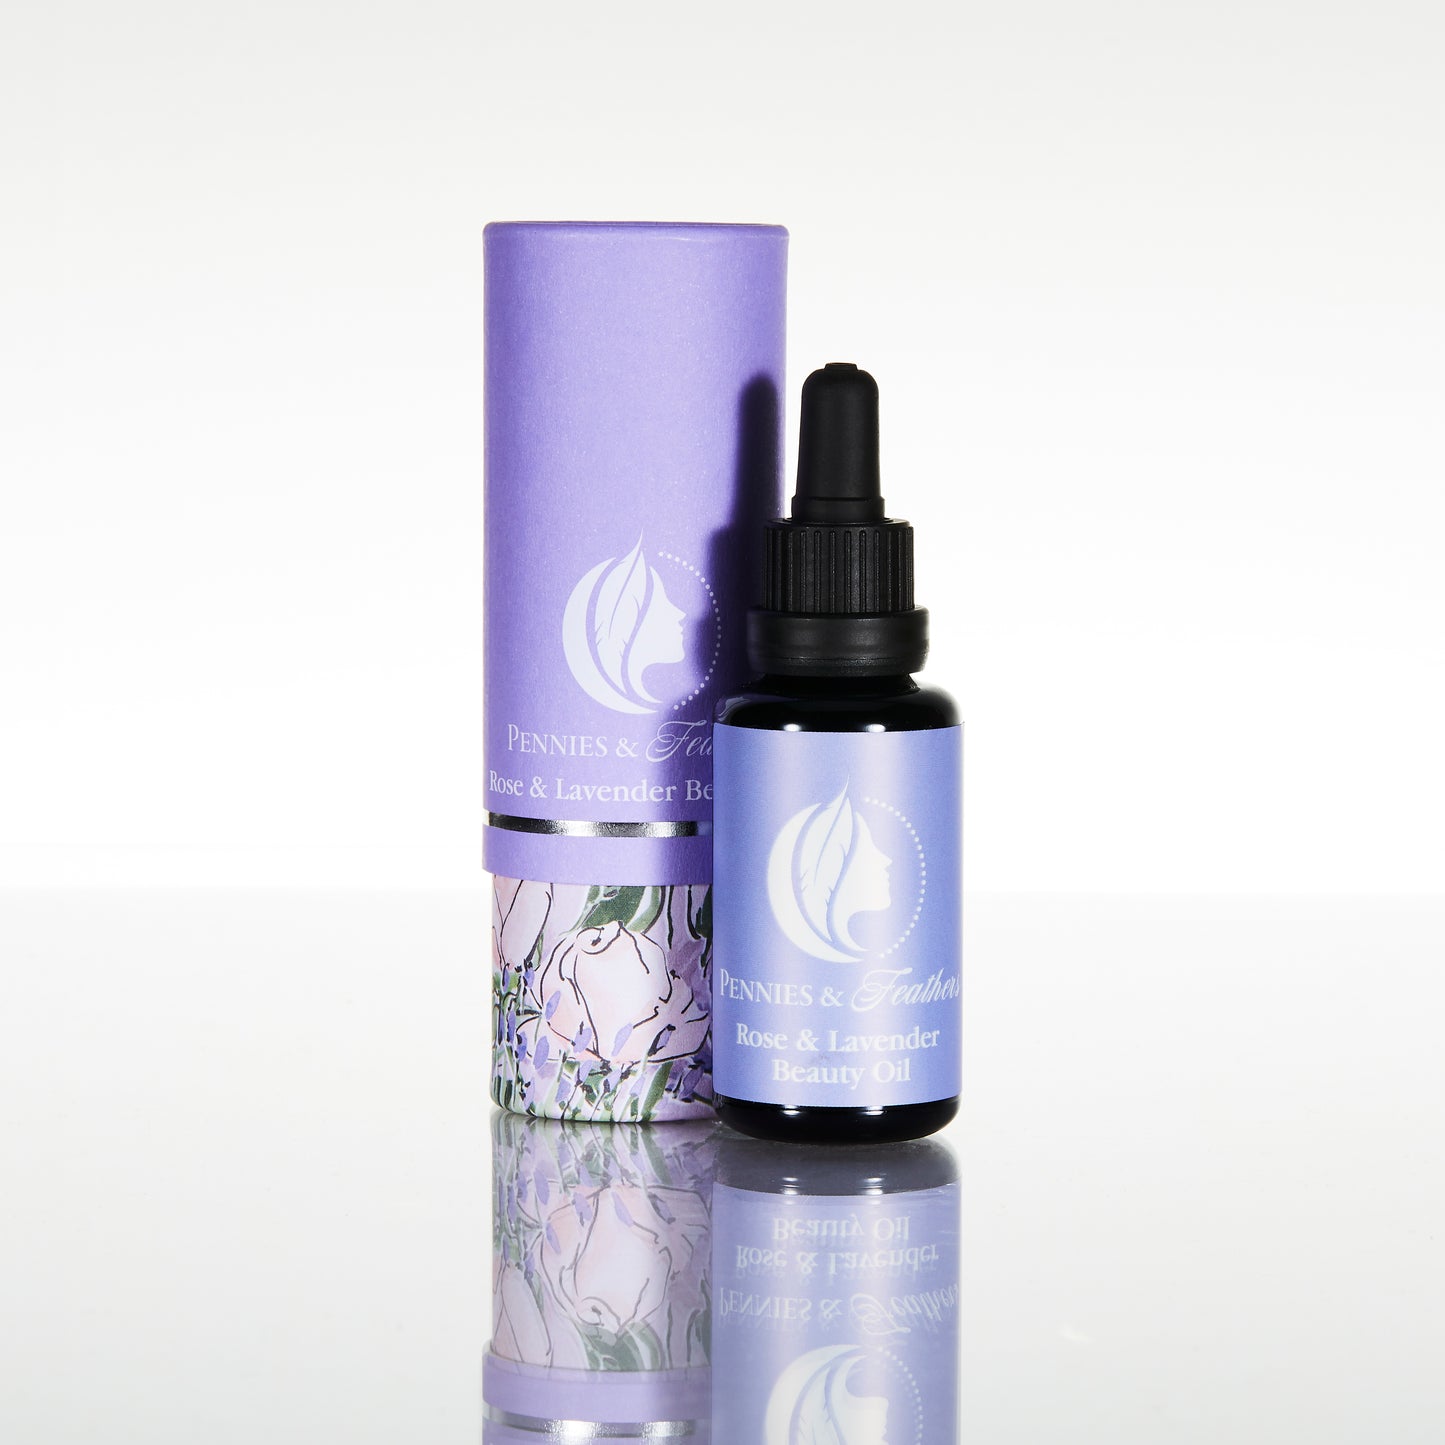 Rose & Lavender Beauty Oil